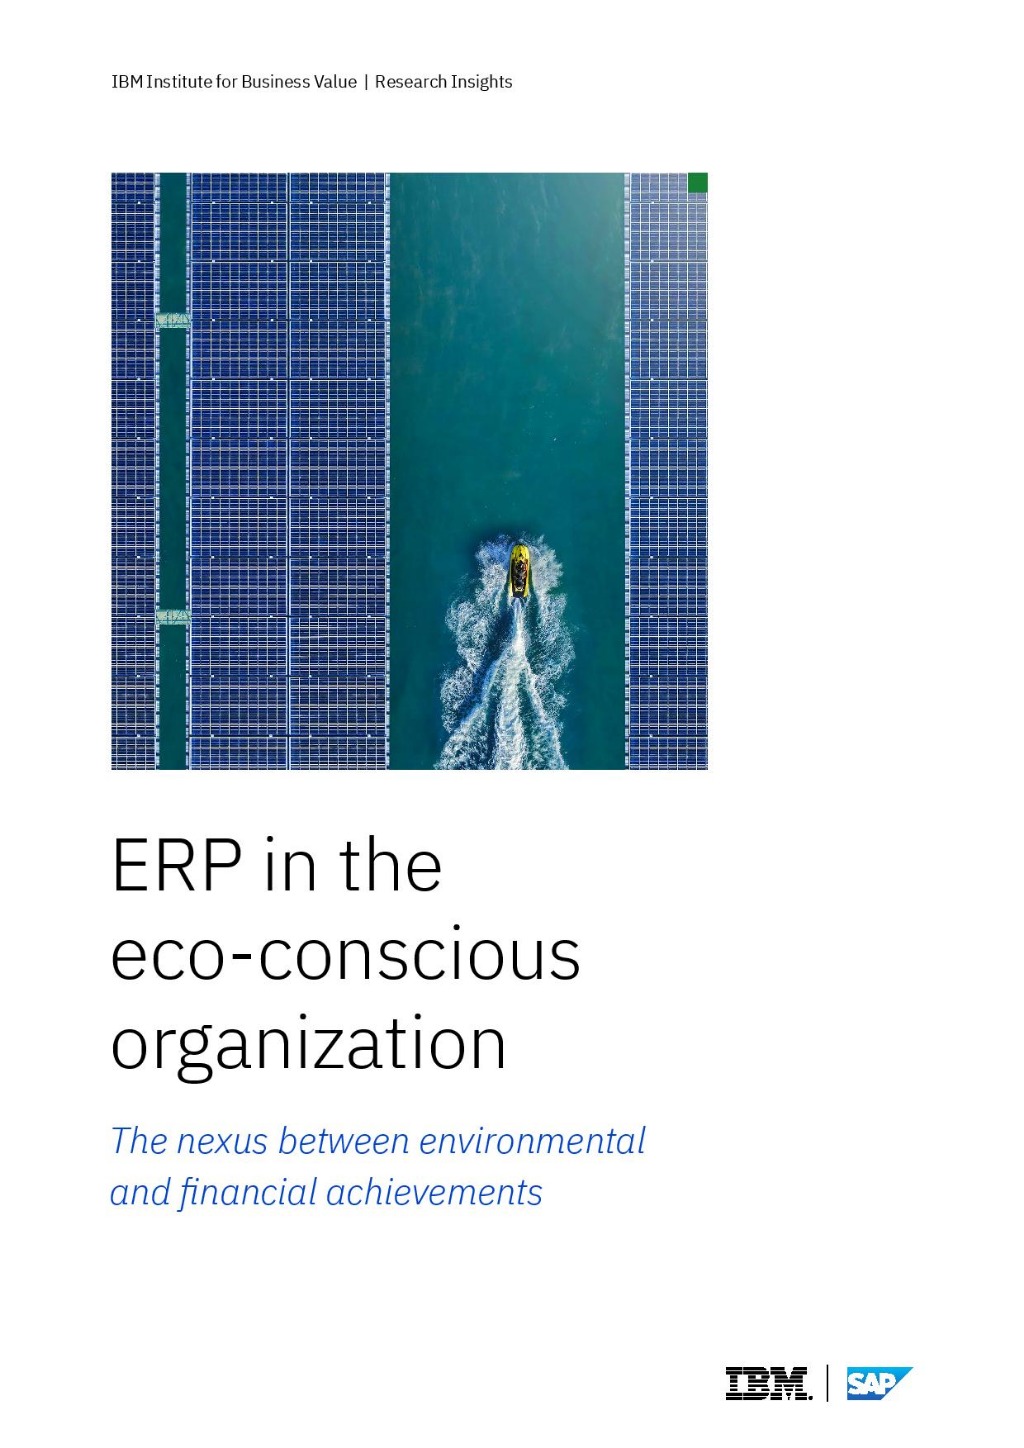 [사진자료] IBM ‘환경을 생각하는기업 내에서의 전사적자원관리(ERP)’ 보고서 표지.jpg